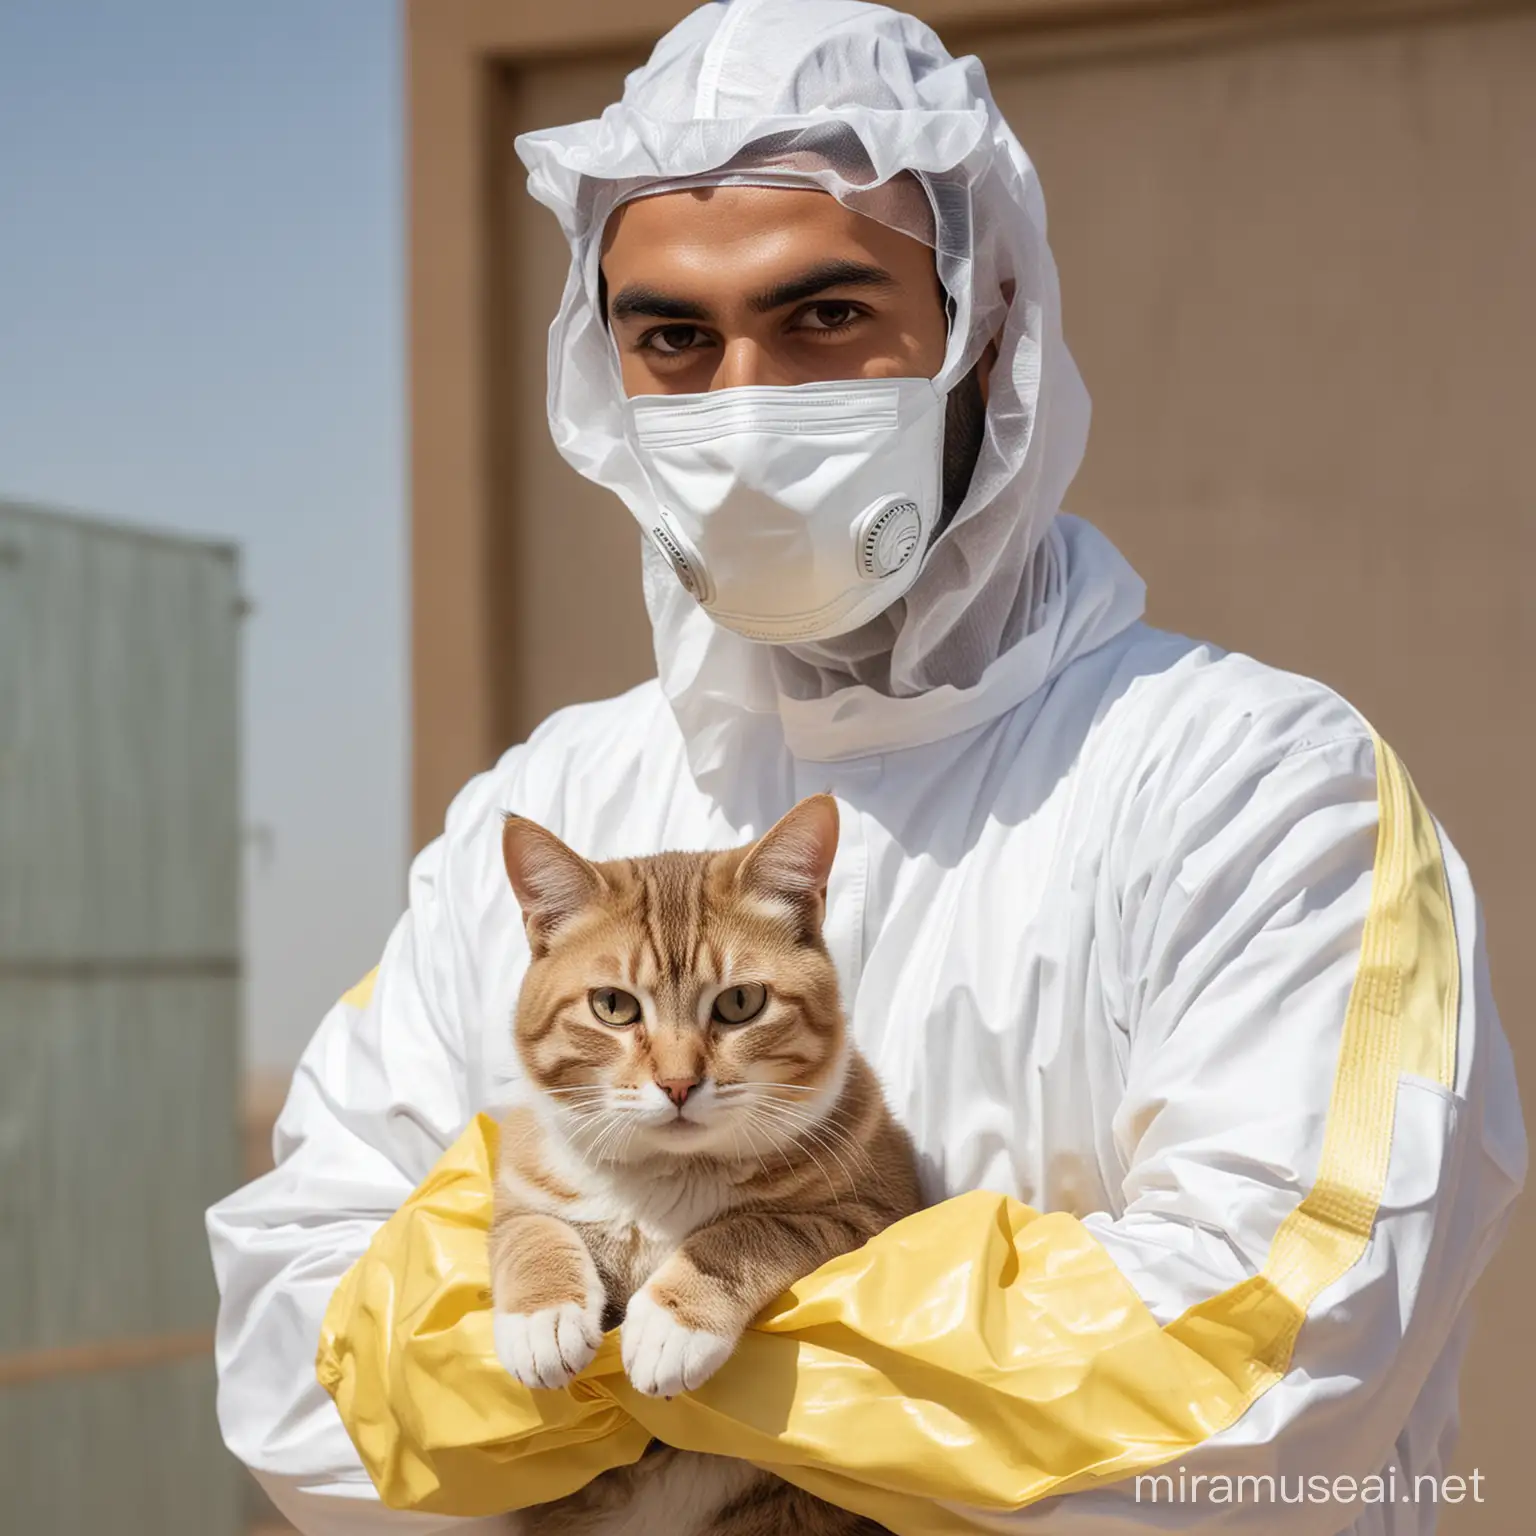 arab man in hazmat suit with a cat